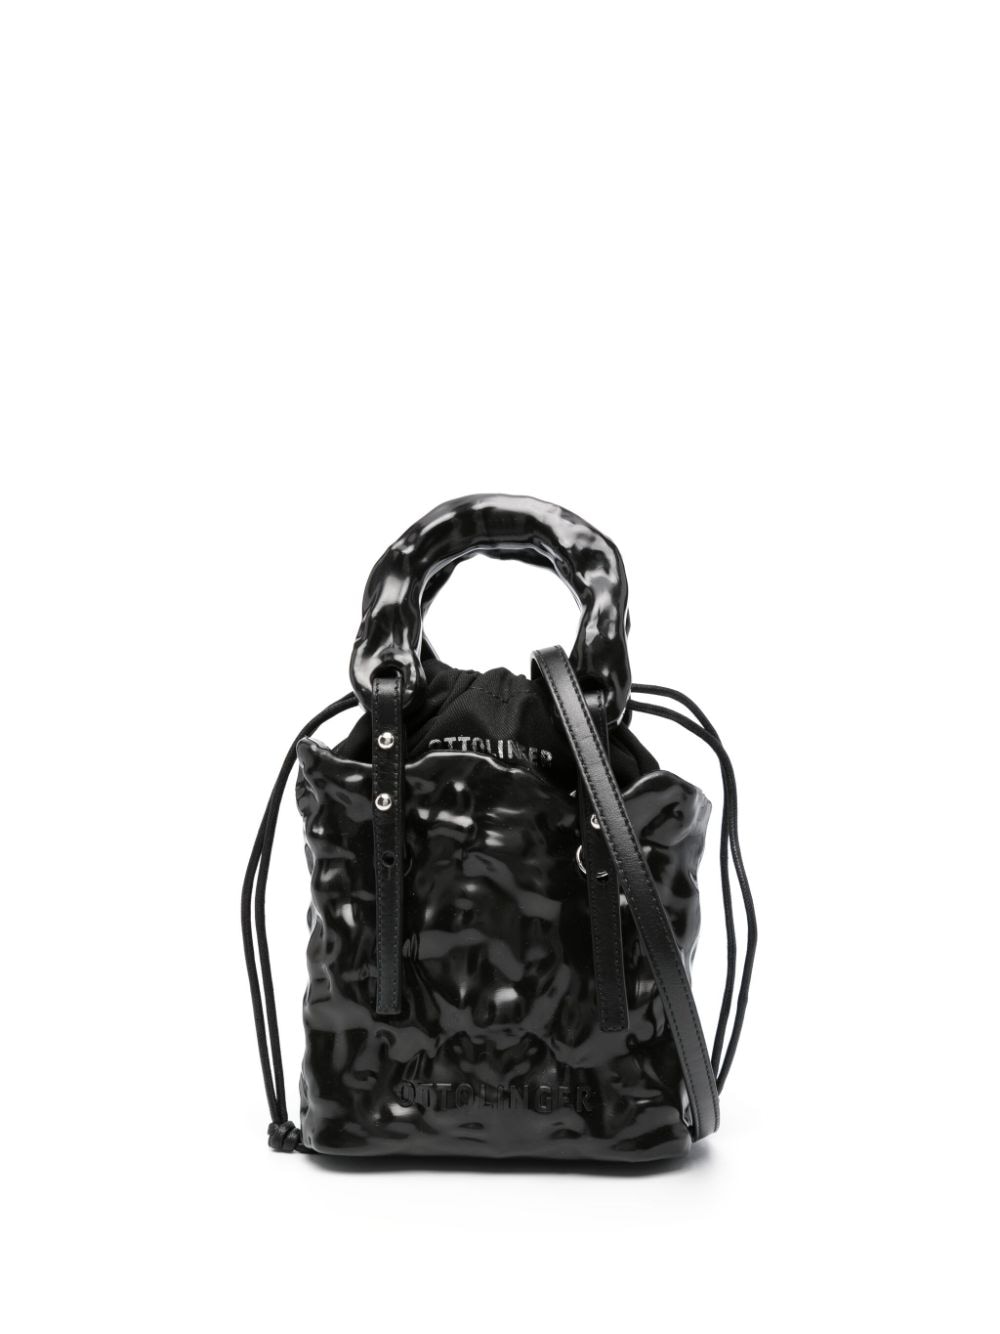 Ottolinger Signature Ceramic Bag In Black